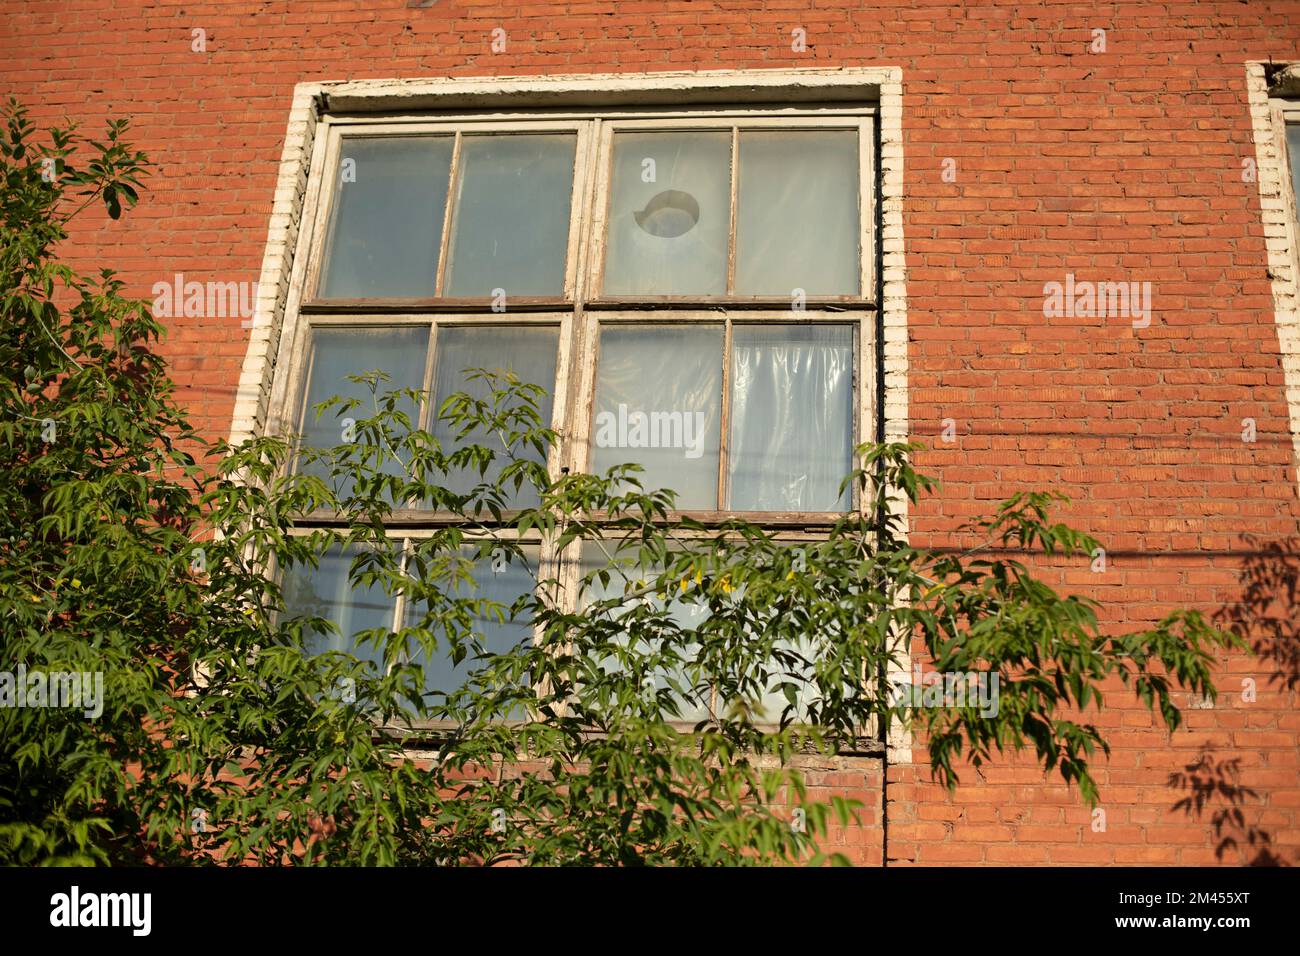 Mehr Fenster im Gebäude. Fenster in einer Ziegelwand. Baum vor dem Fenster. Altes Gebäude in der Stadt. Stockfoto